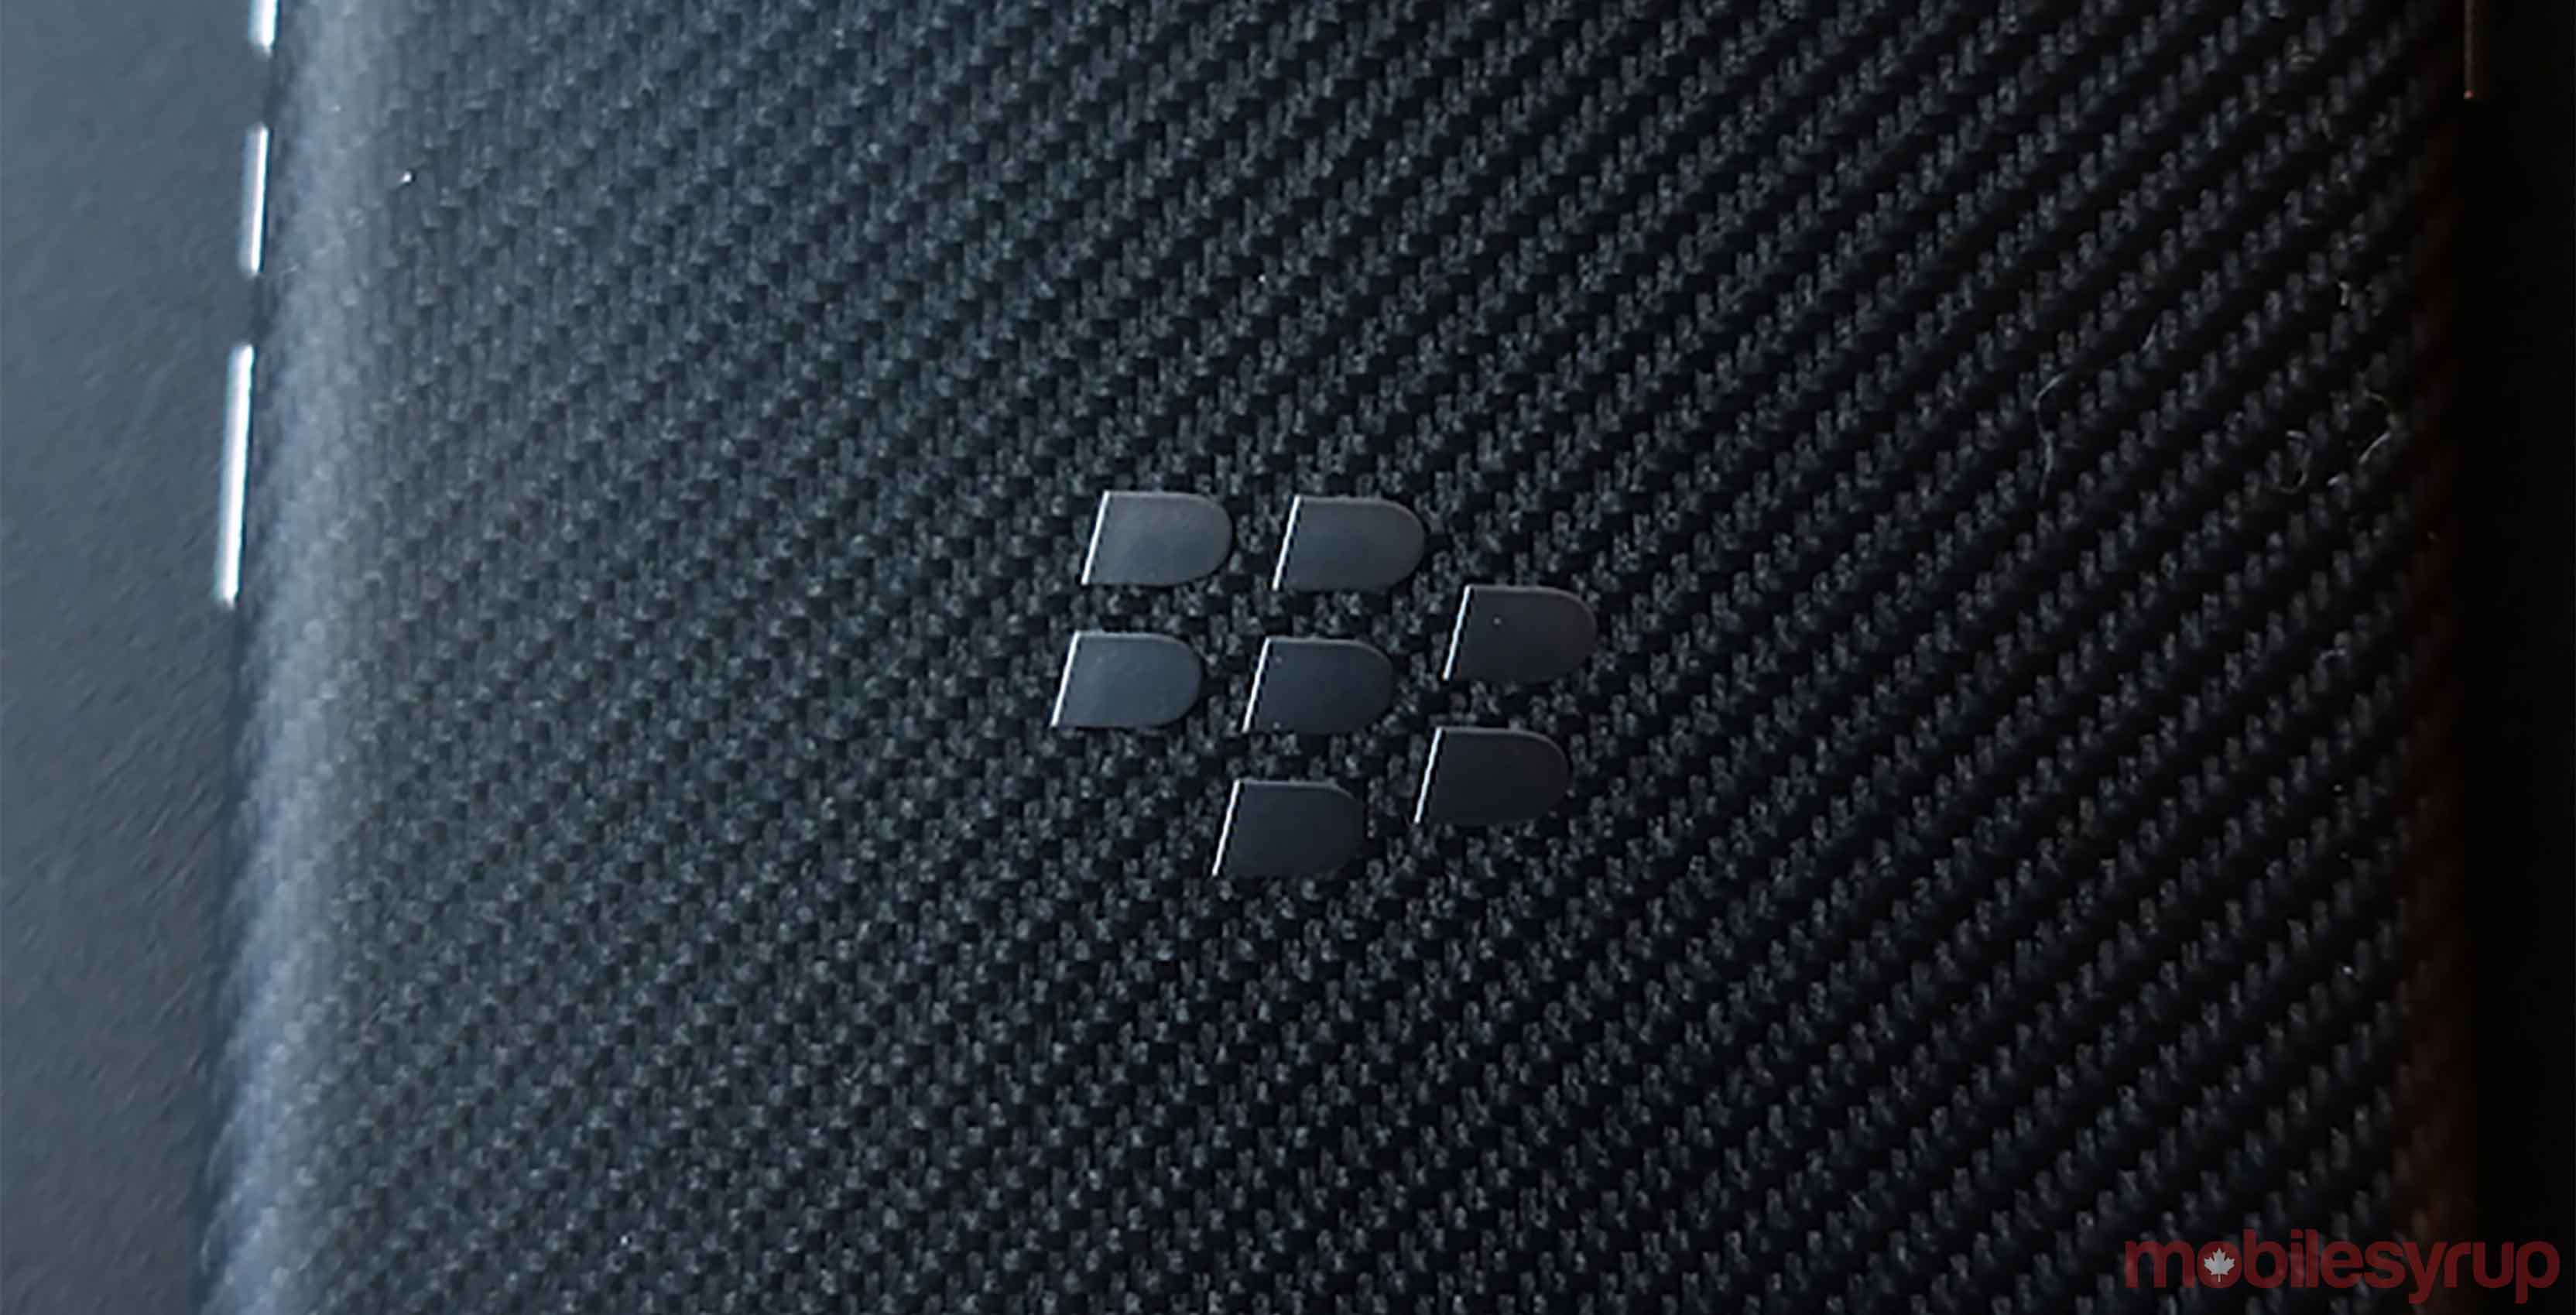 BlackBerry earning report